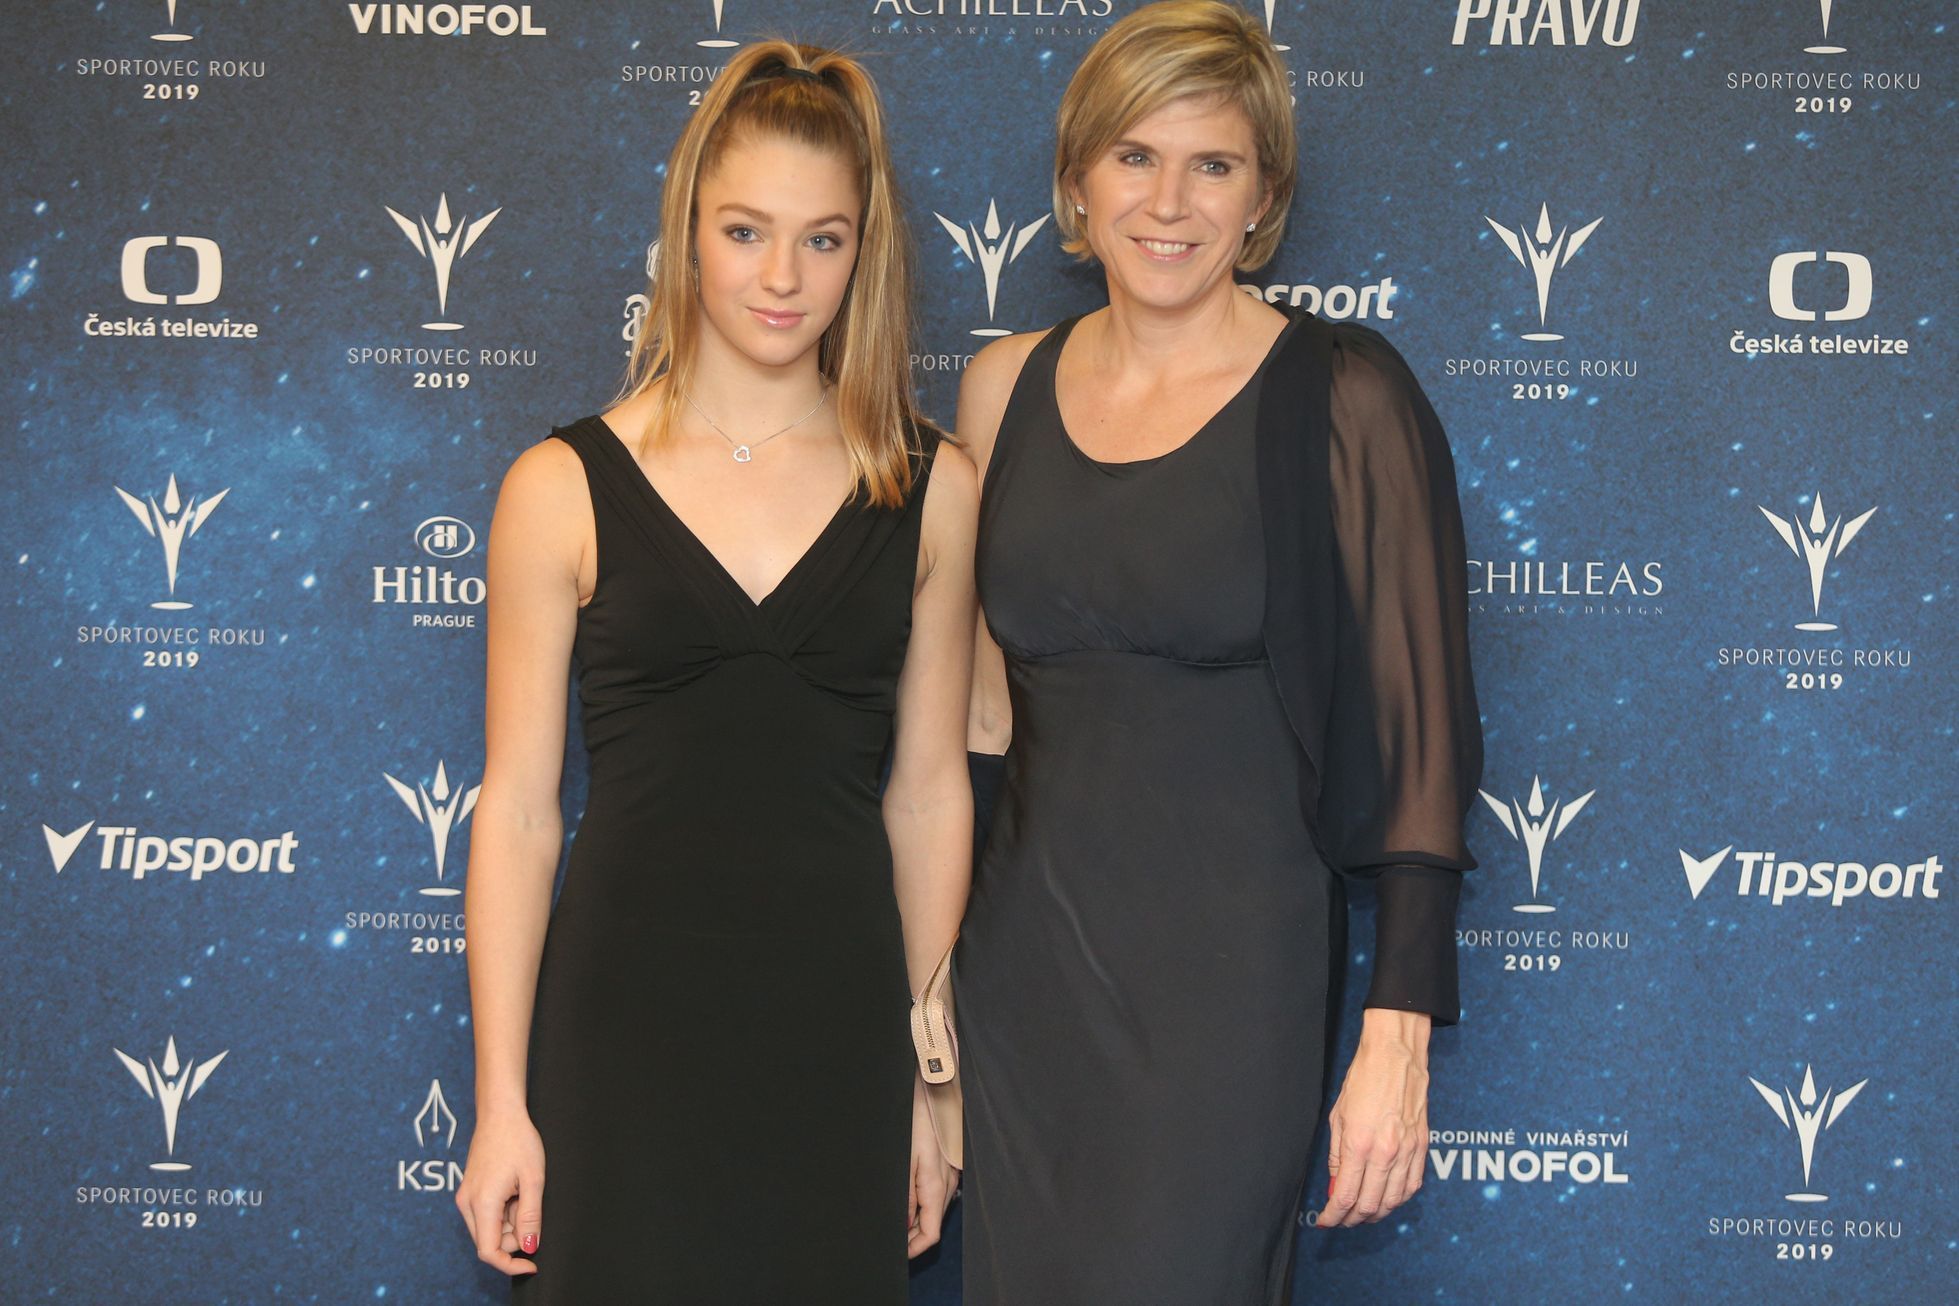 Sportovec roku 2019: Kateřina Neumannová s dcerou